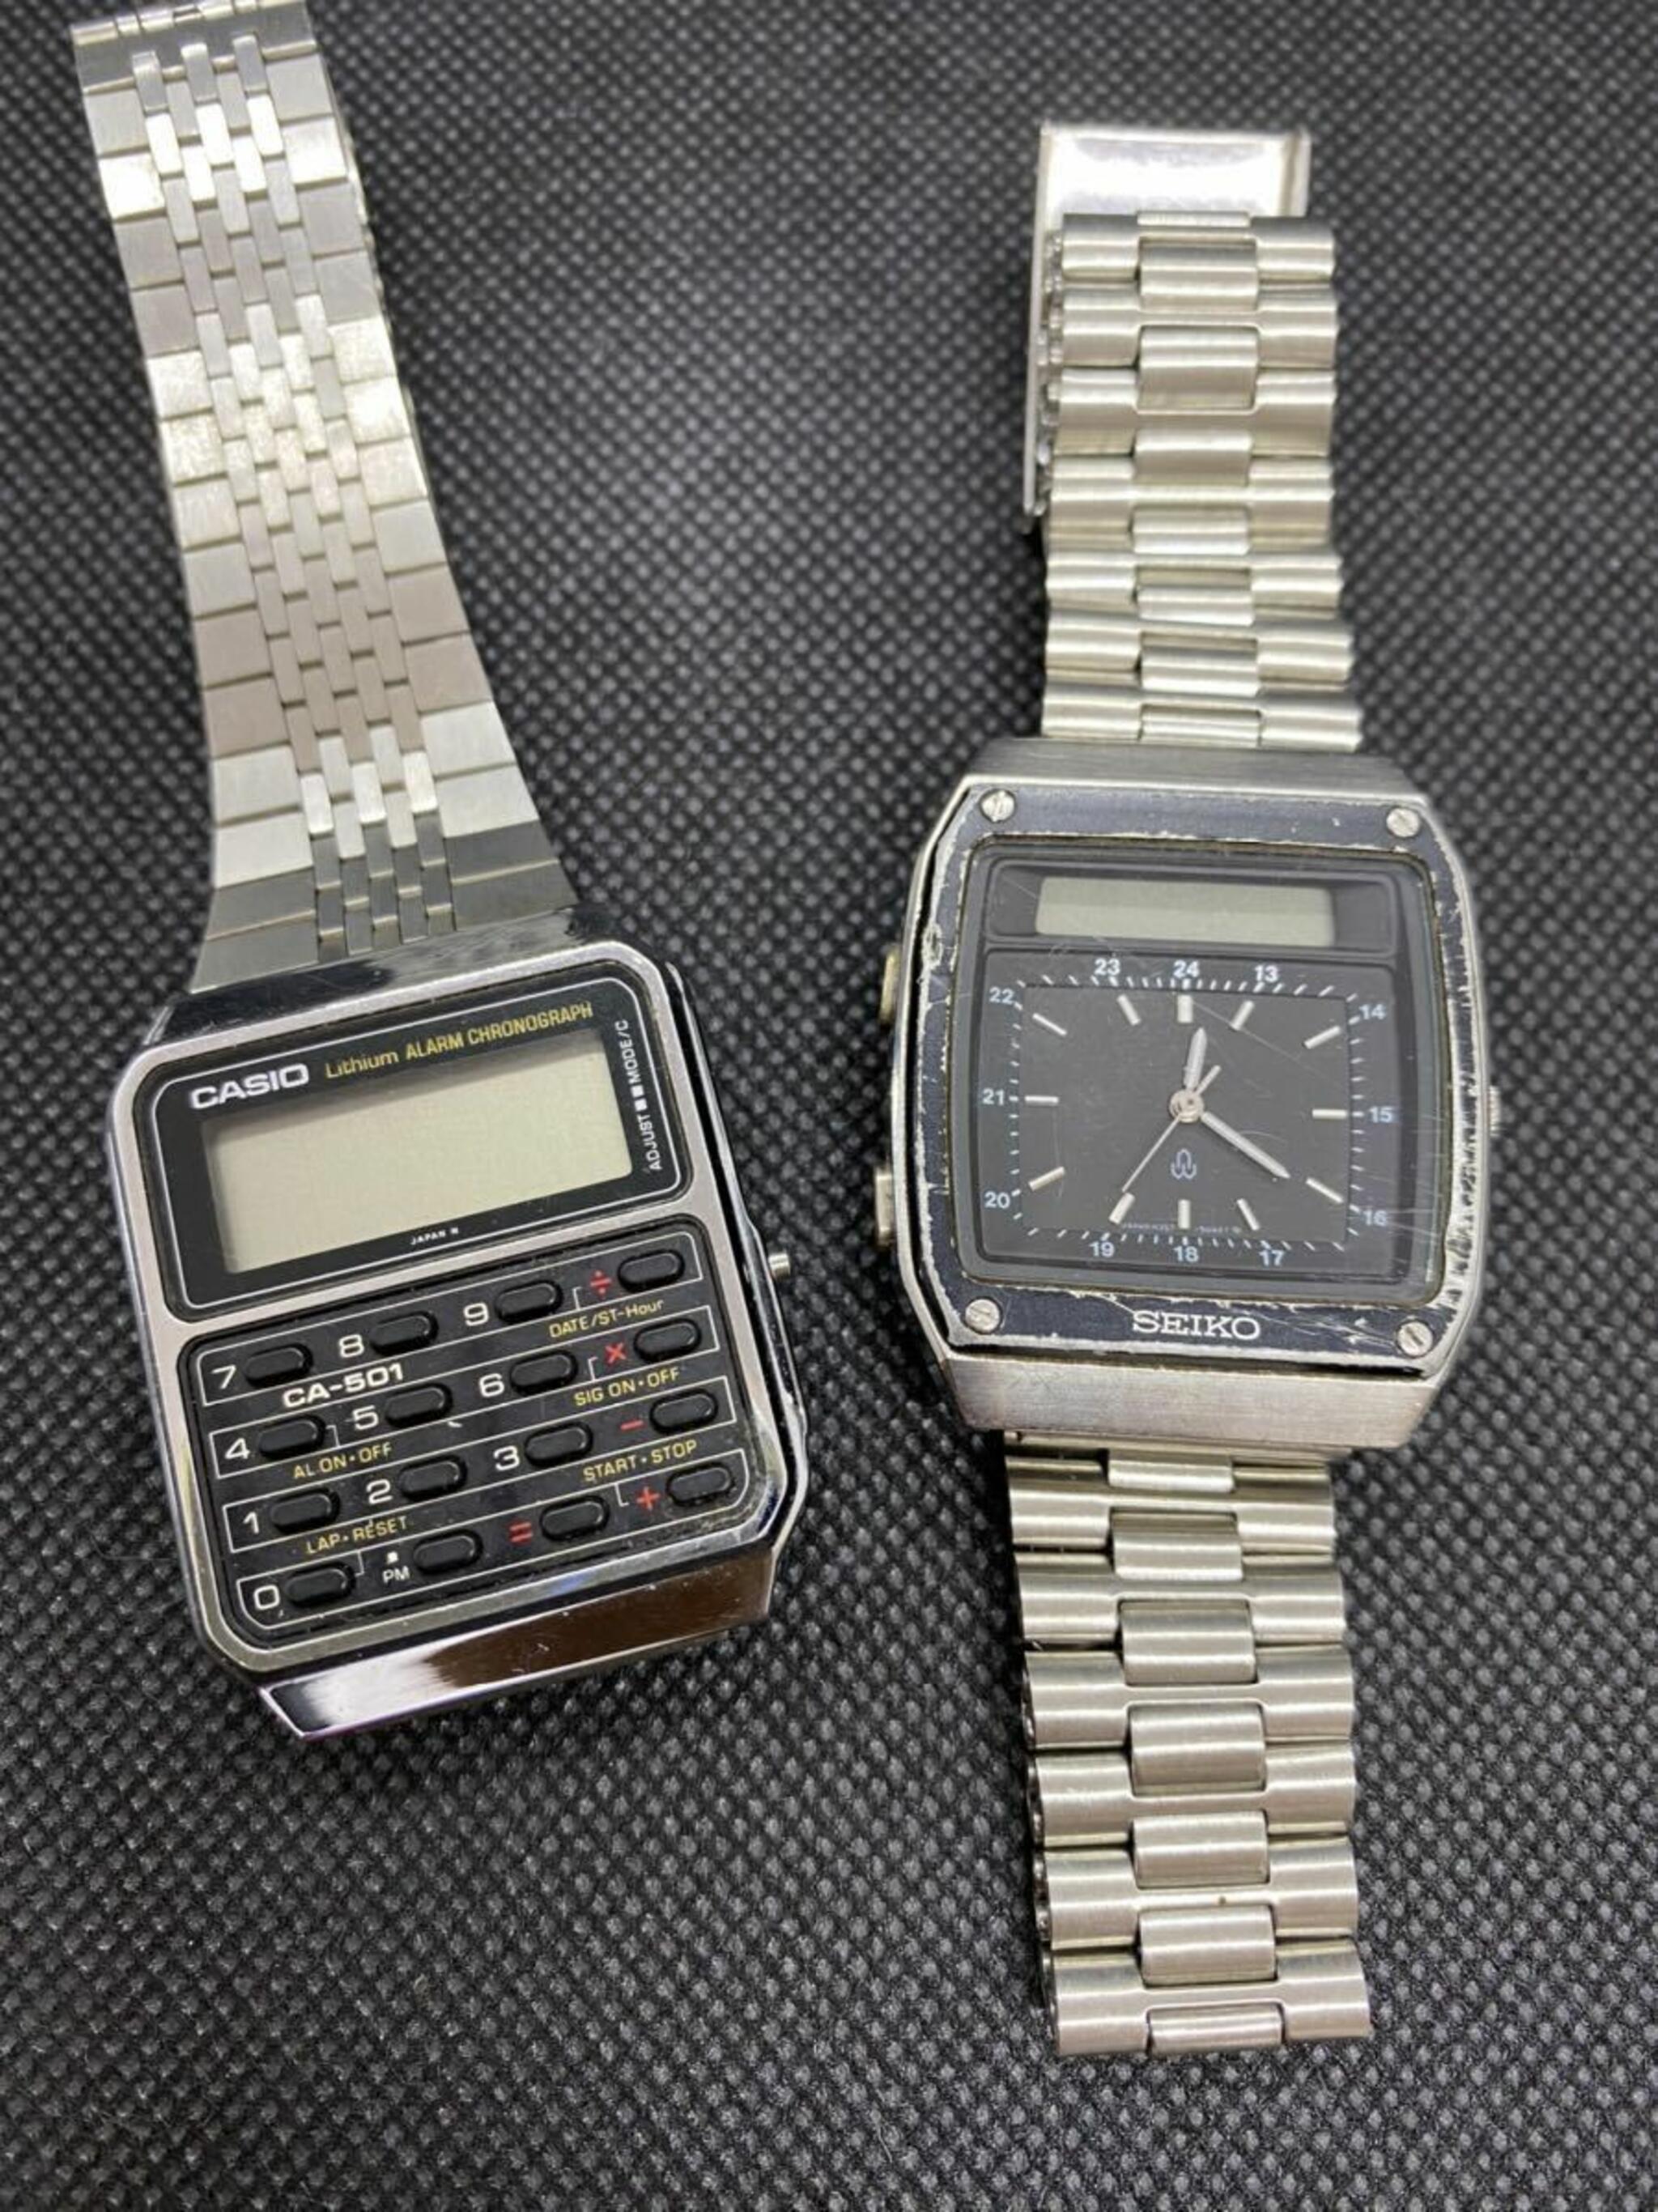 なんでも査定のトータル石川支店からのお知らせ(CASIOデジタル腕時計の買取事例)に関する写真